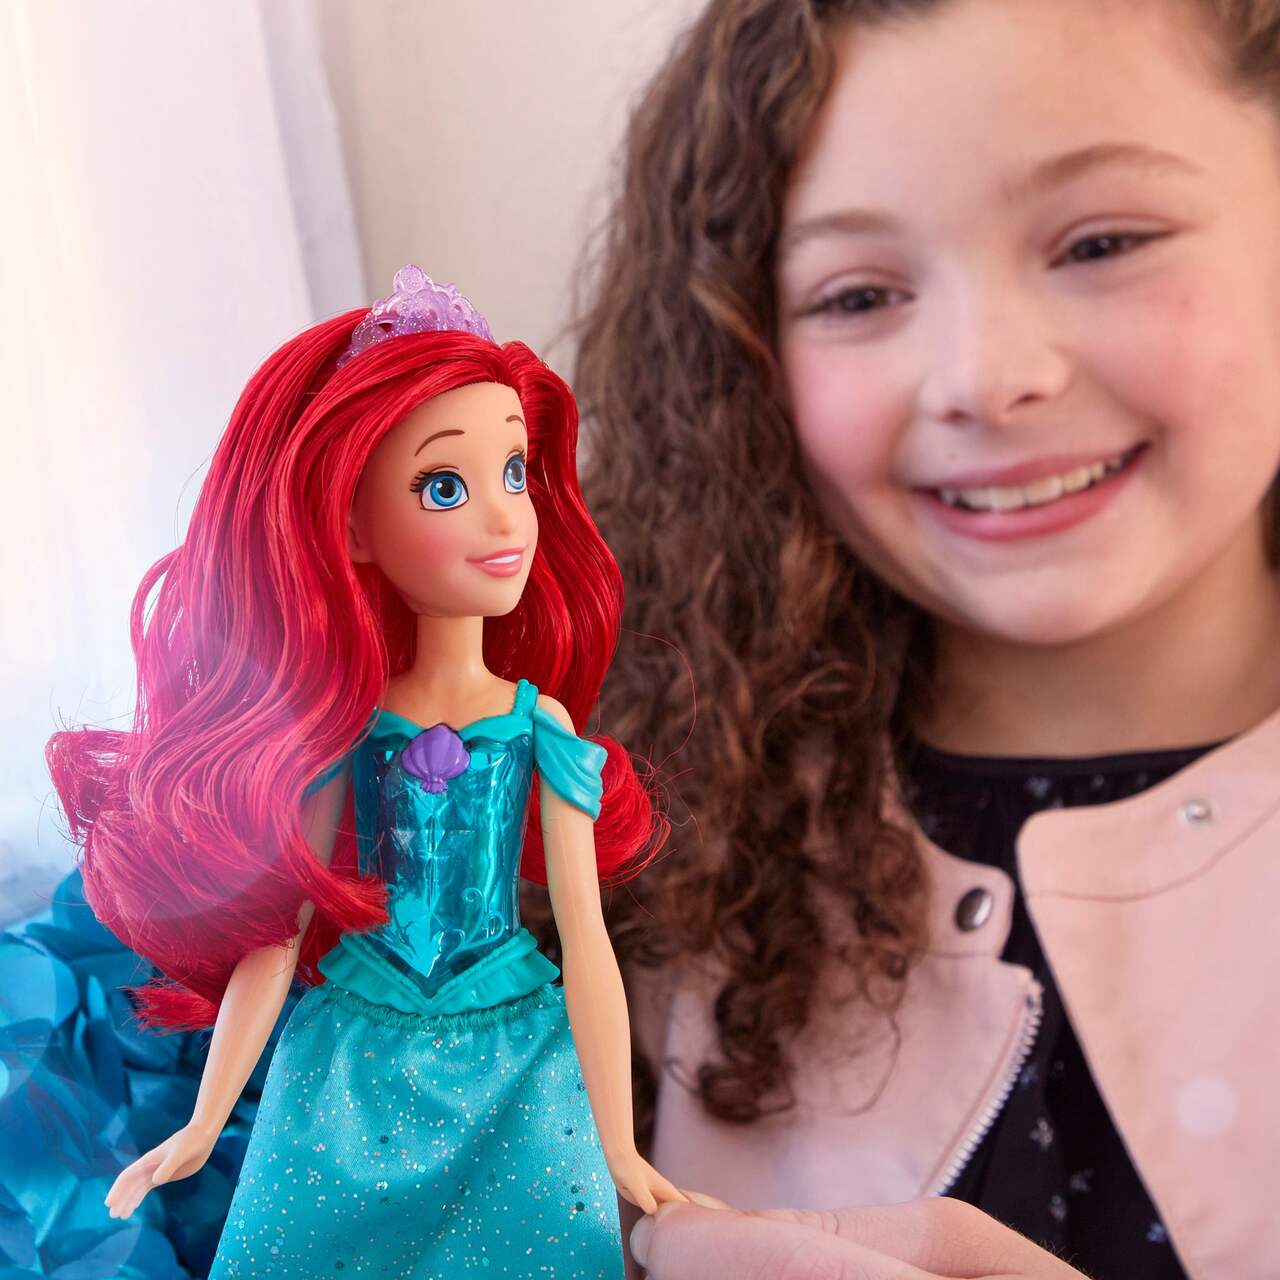 Disney Princess Wedding Doll, Assorted, Age 1+